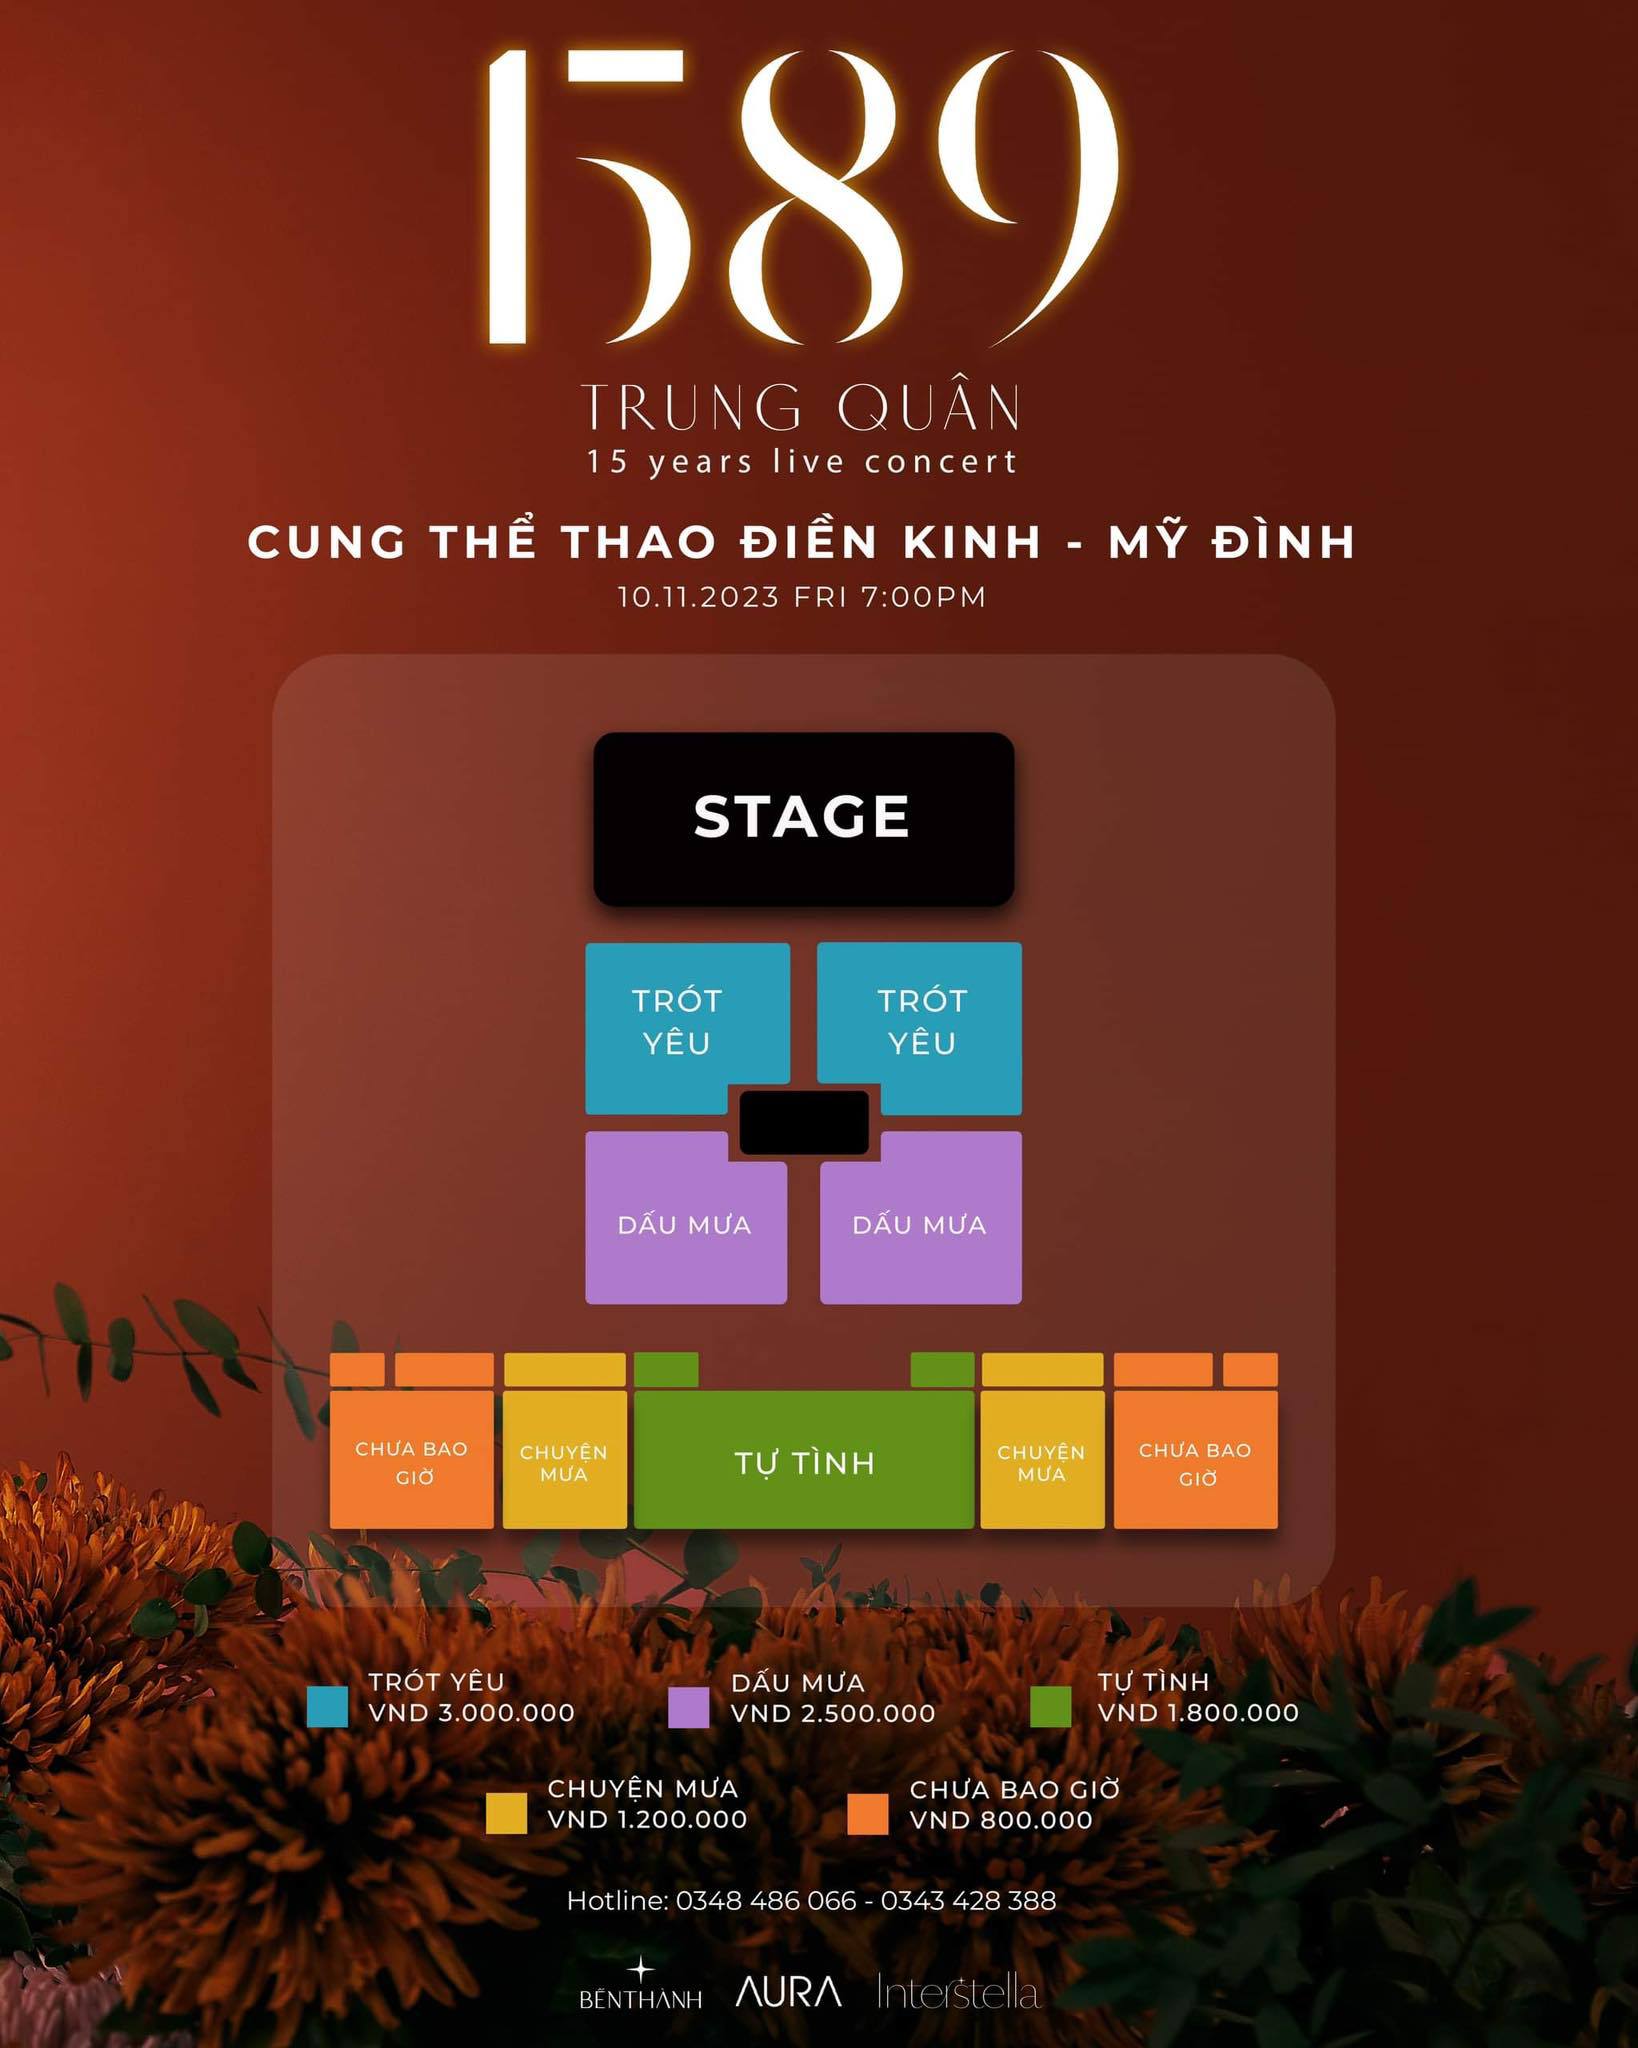 Cả 2 hạng vé 'Chuyện mưa' và 'Tự tình' trong đêm concert ở Hà Nội và TP.HCM của Trung Quân đều đã sold-out